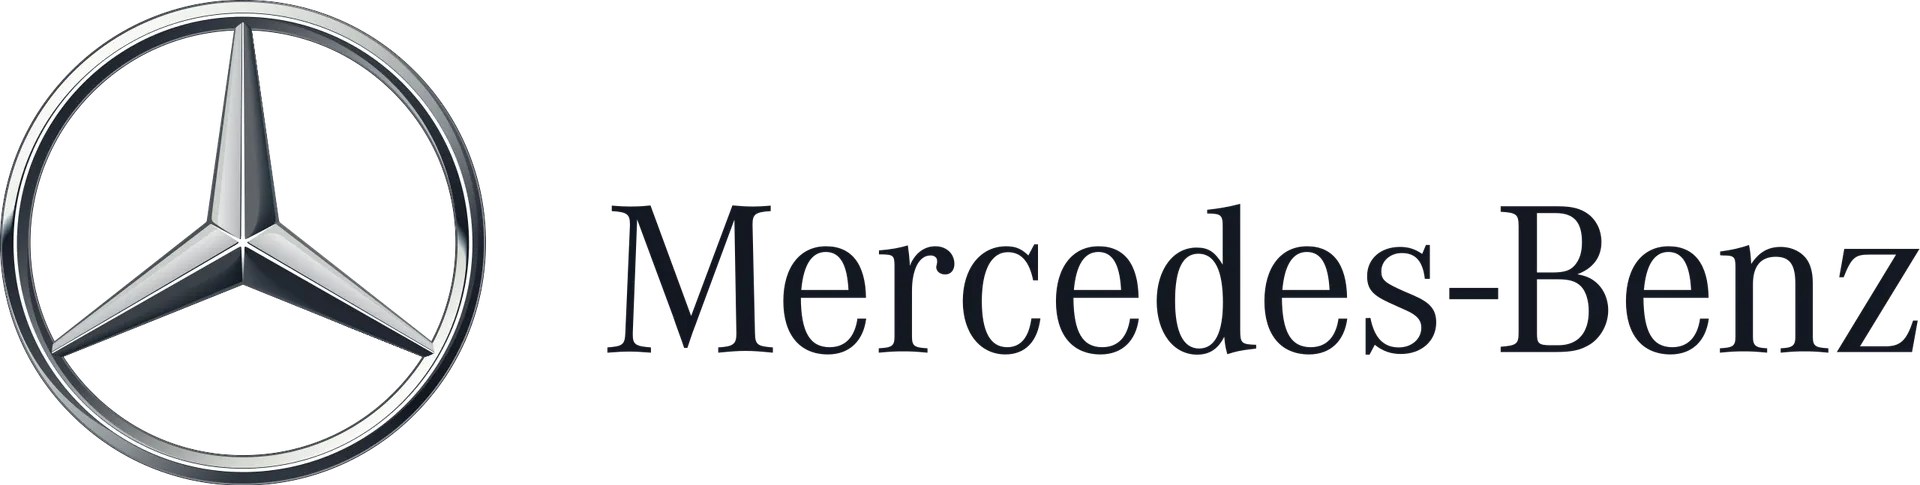 MERCEDES-BENZ logo. Current catalogue